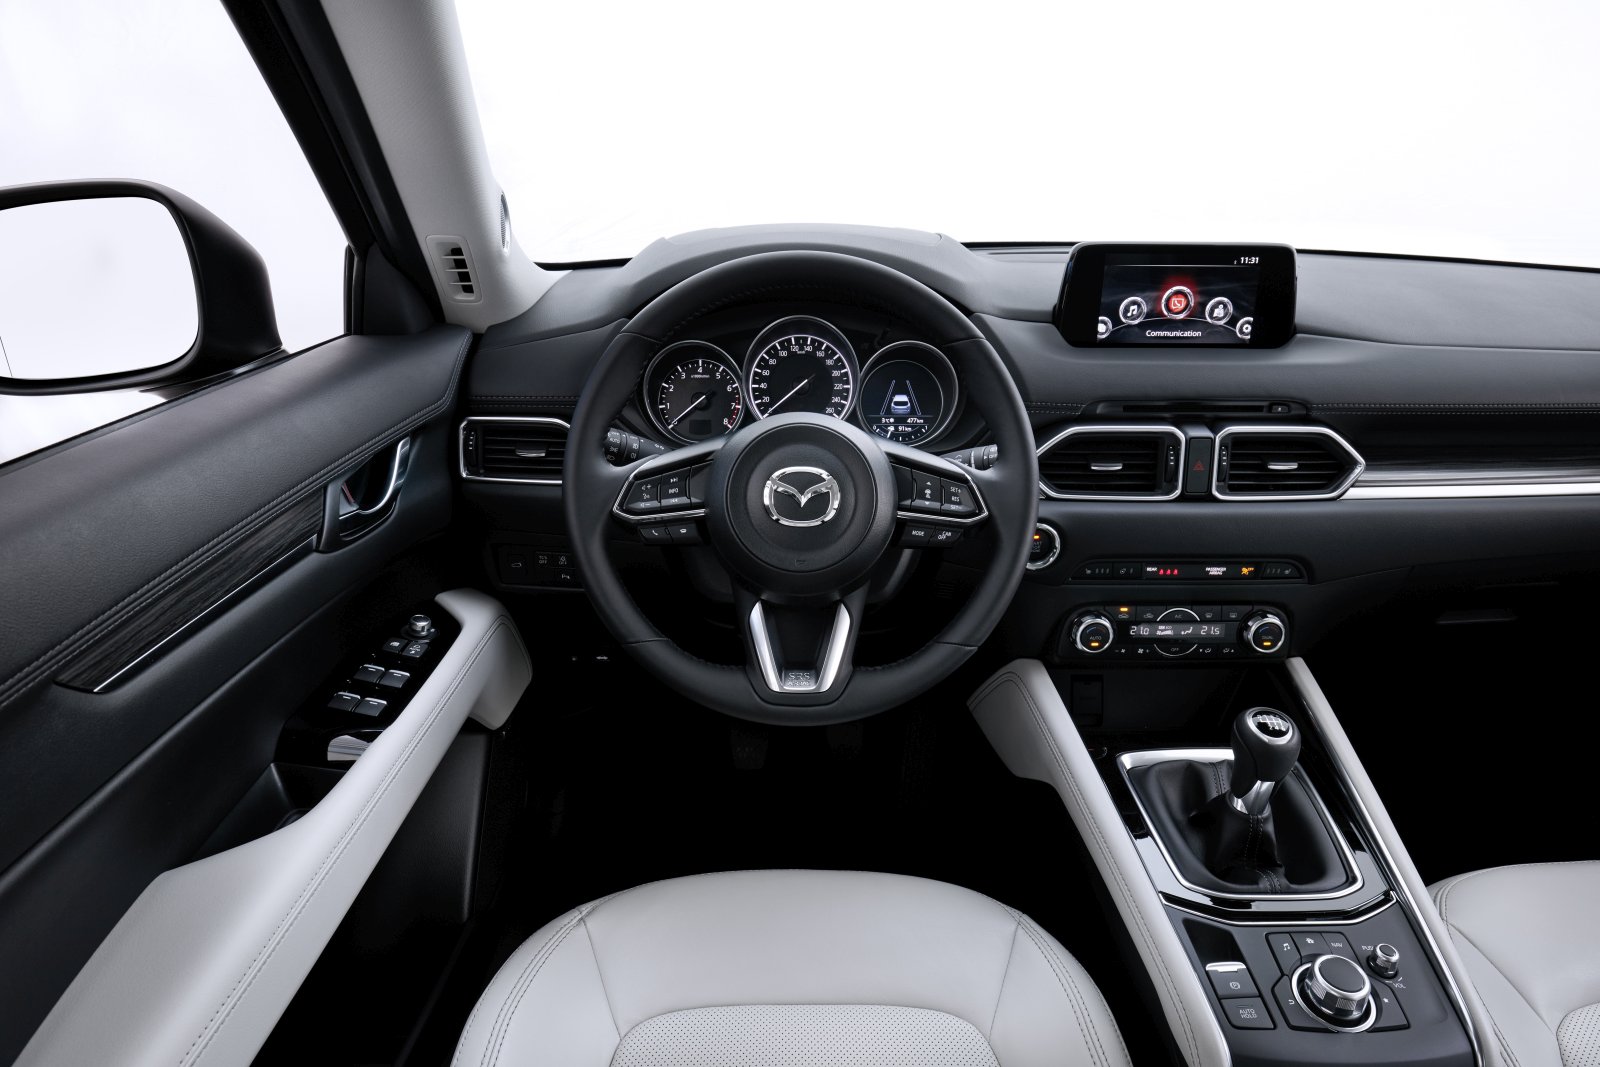 Das horizontale Layout des Armaturenbretts schafft einen weiten, geräumigen Eindruck. Am Wettrüsten der Display-Durchmesser beteiligt sich Mazda nicht.